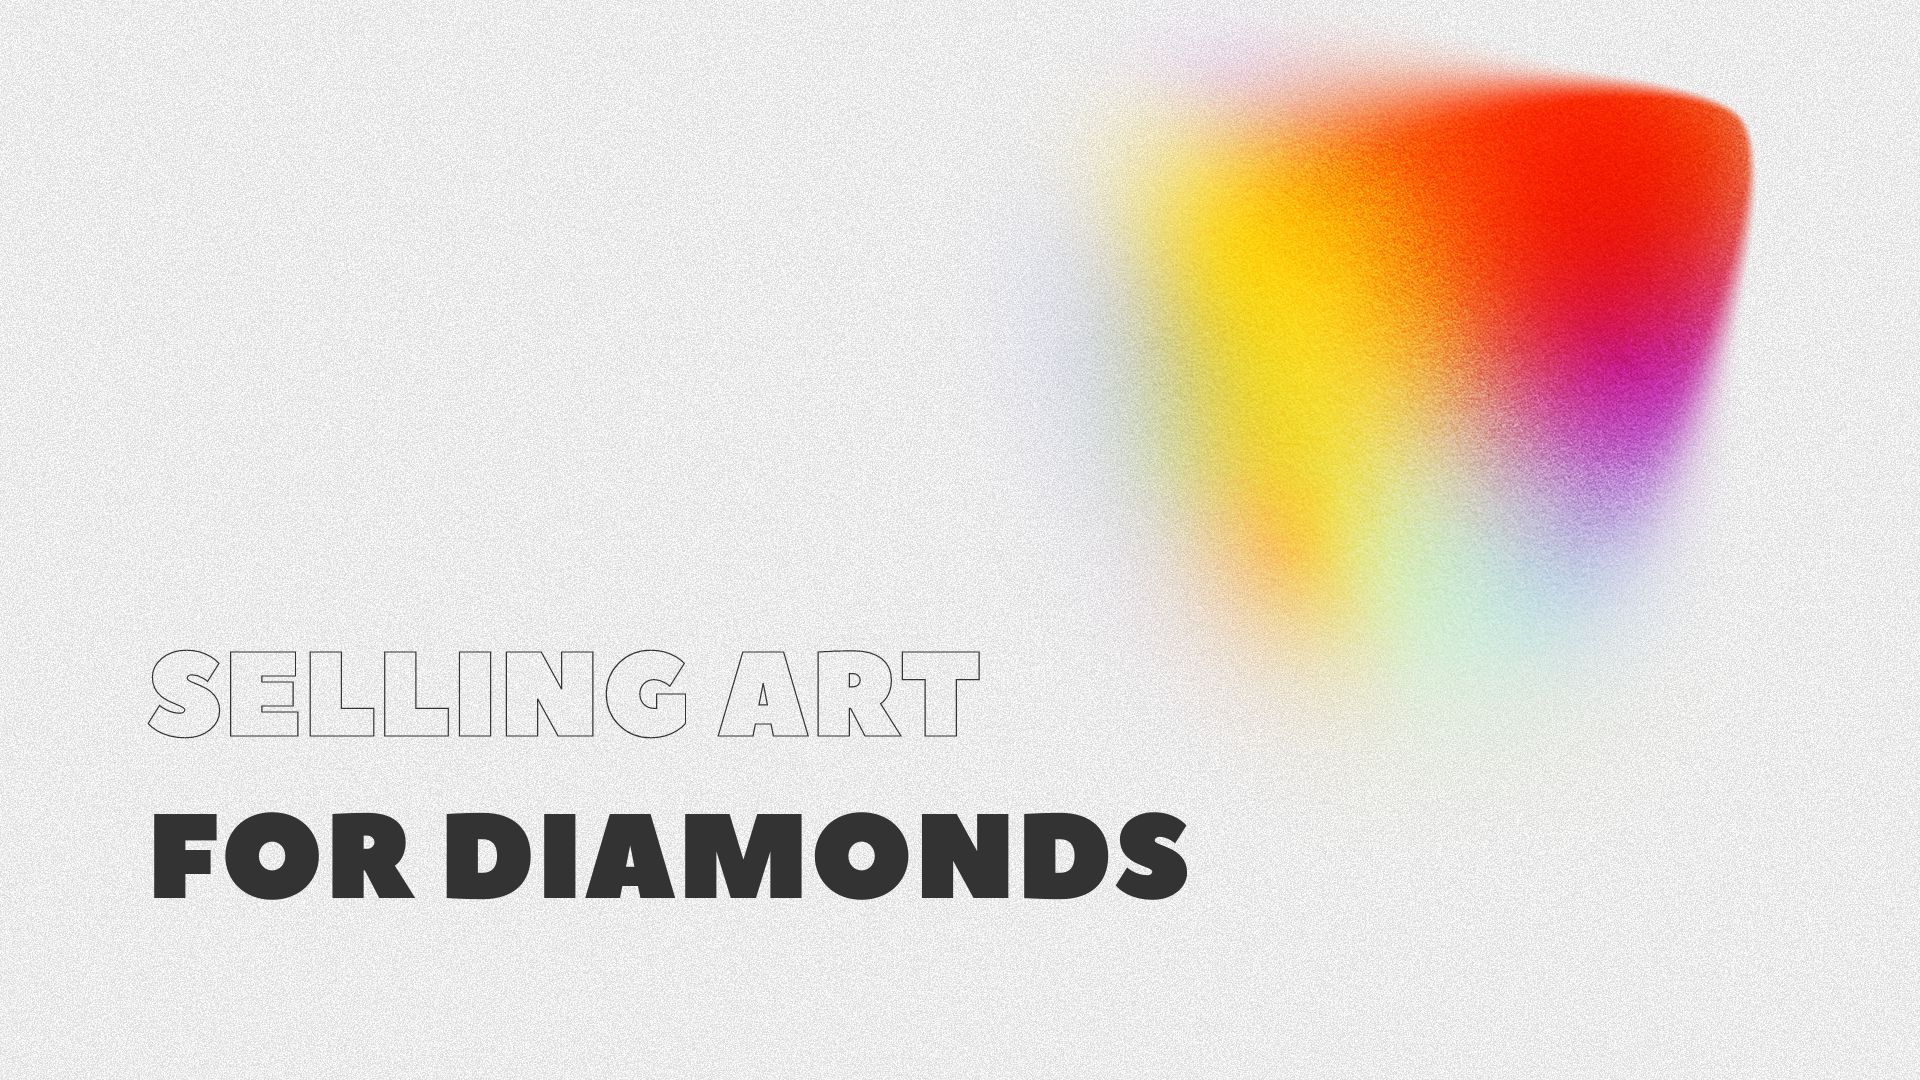 Selling art for diamonds